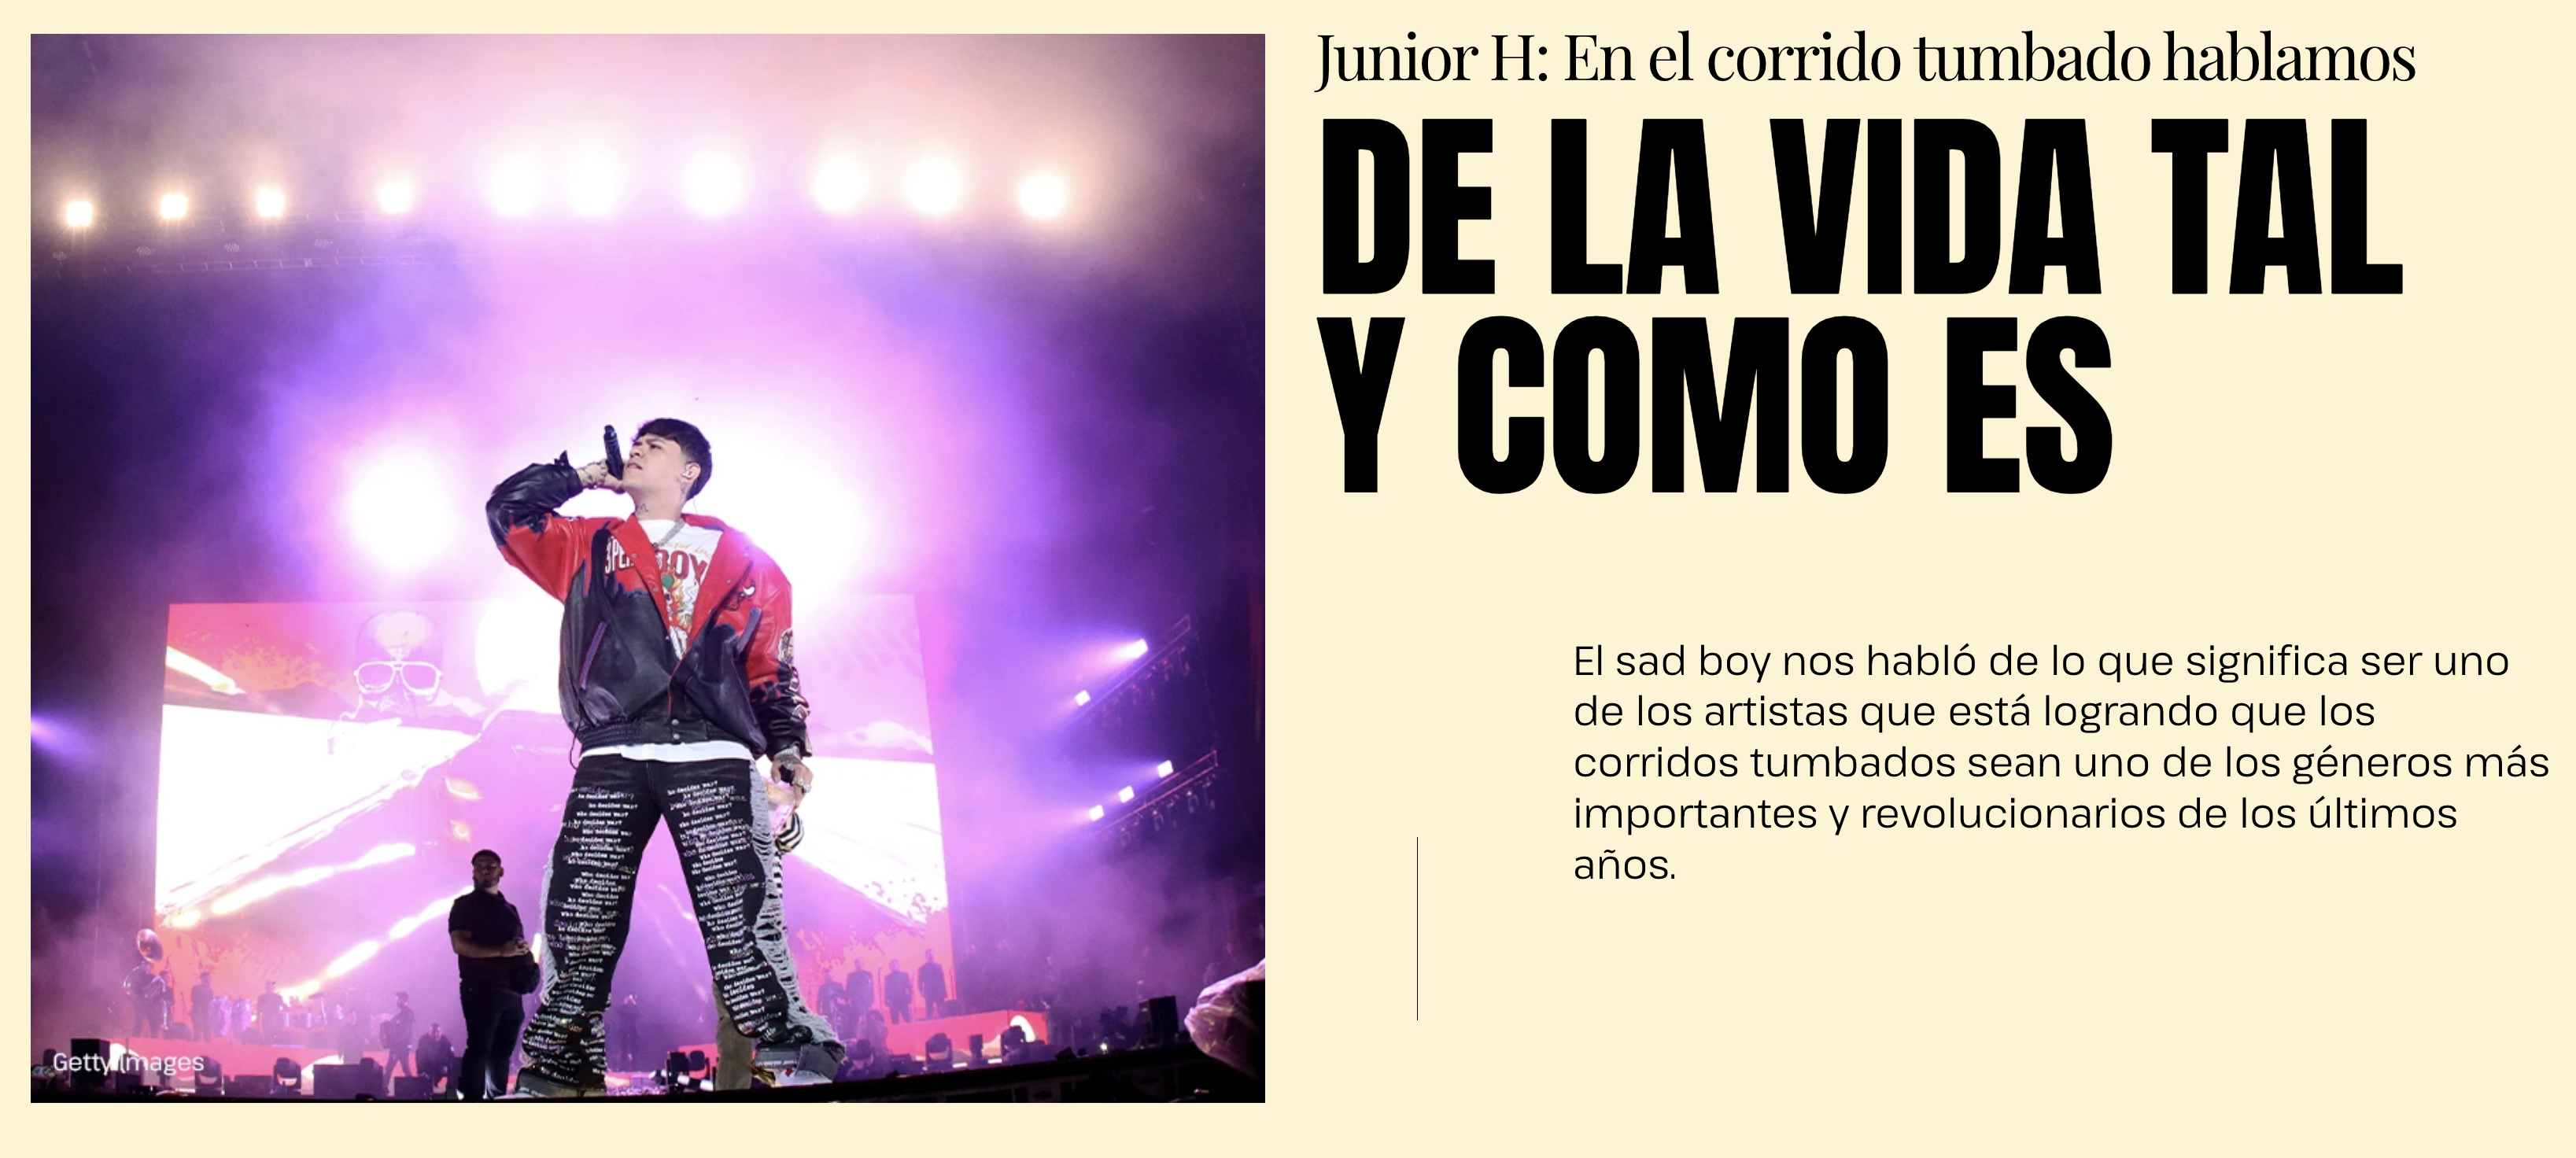 Cantante Junior H en un escenario con micrófono y chaqueta decorada, anuncio del artículo sobre el corrido tumbado